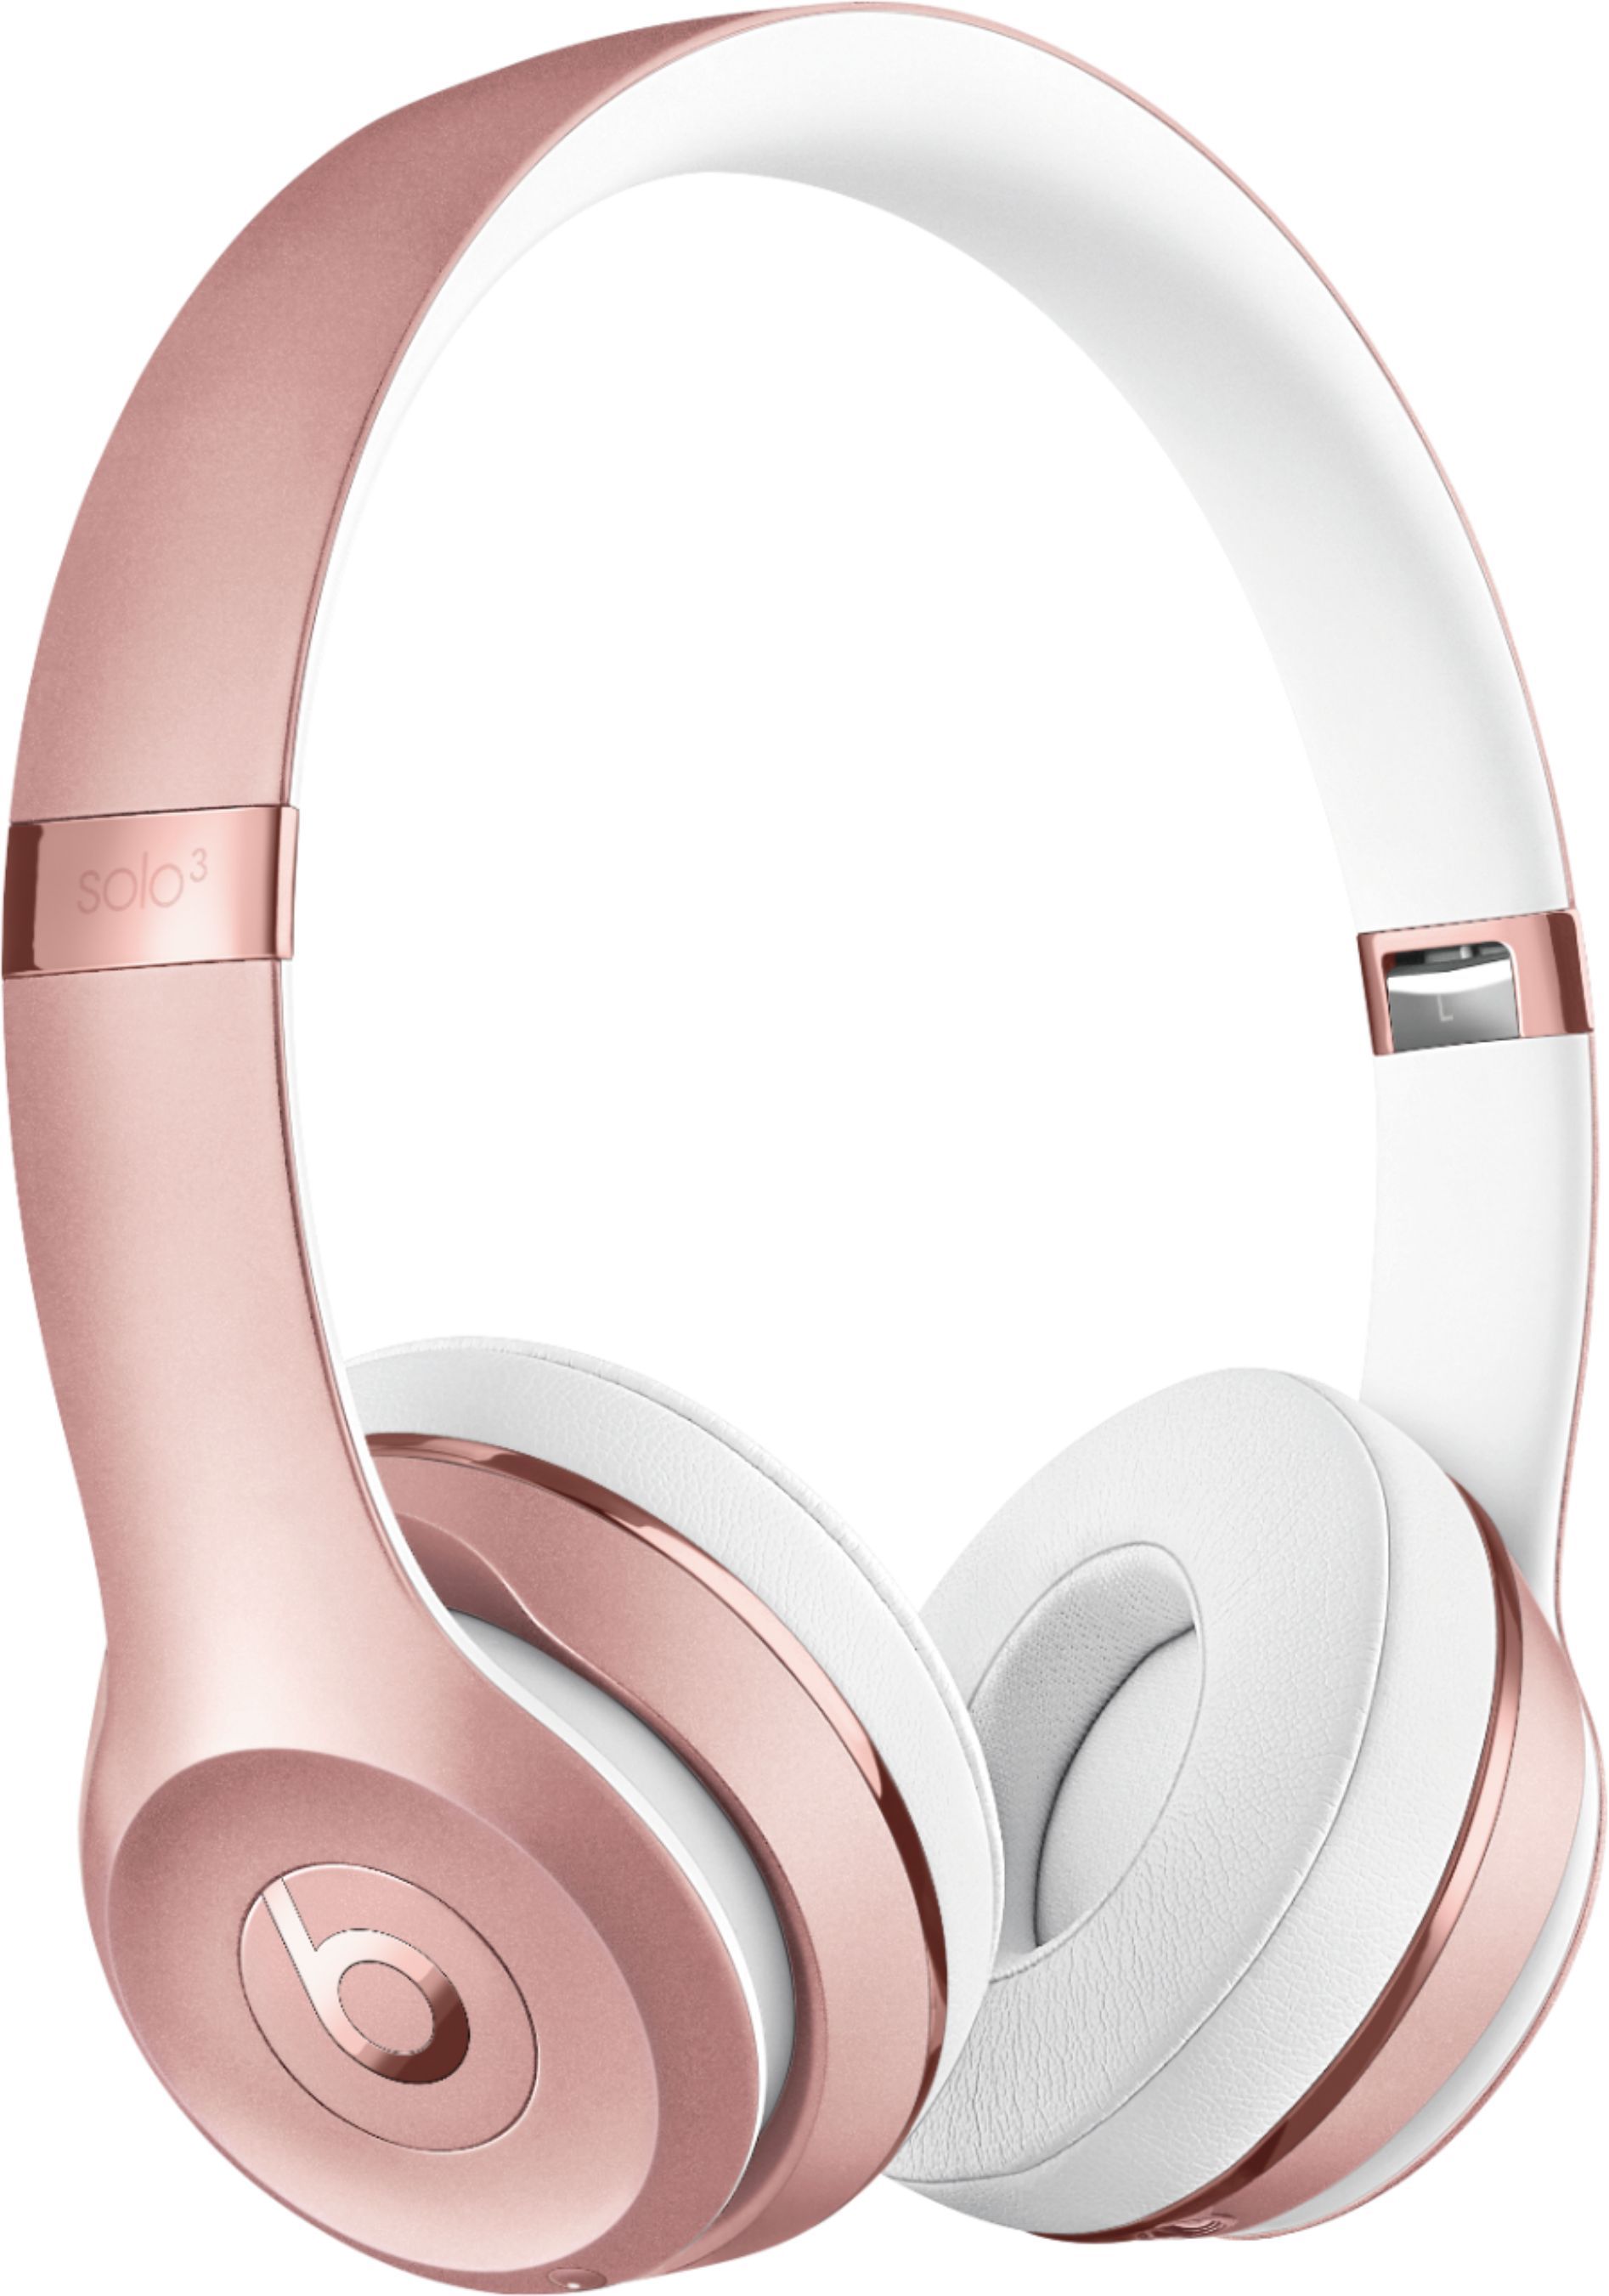 Beats by Dr. Dre Solo³ Wireless On-Ear Headphones Rose Gold MX442LL/A - Best Buy | Best Buy U.S.